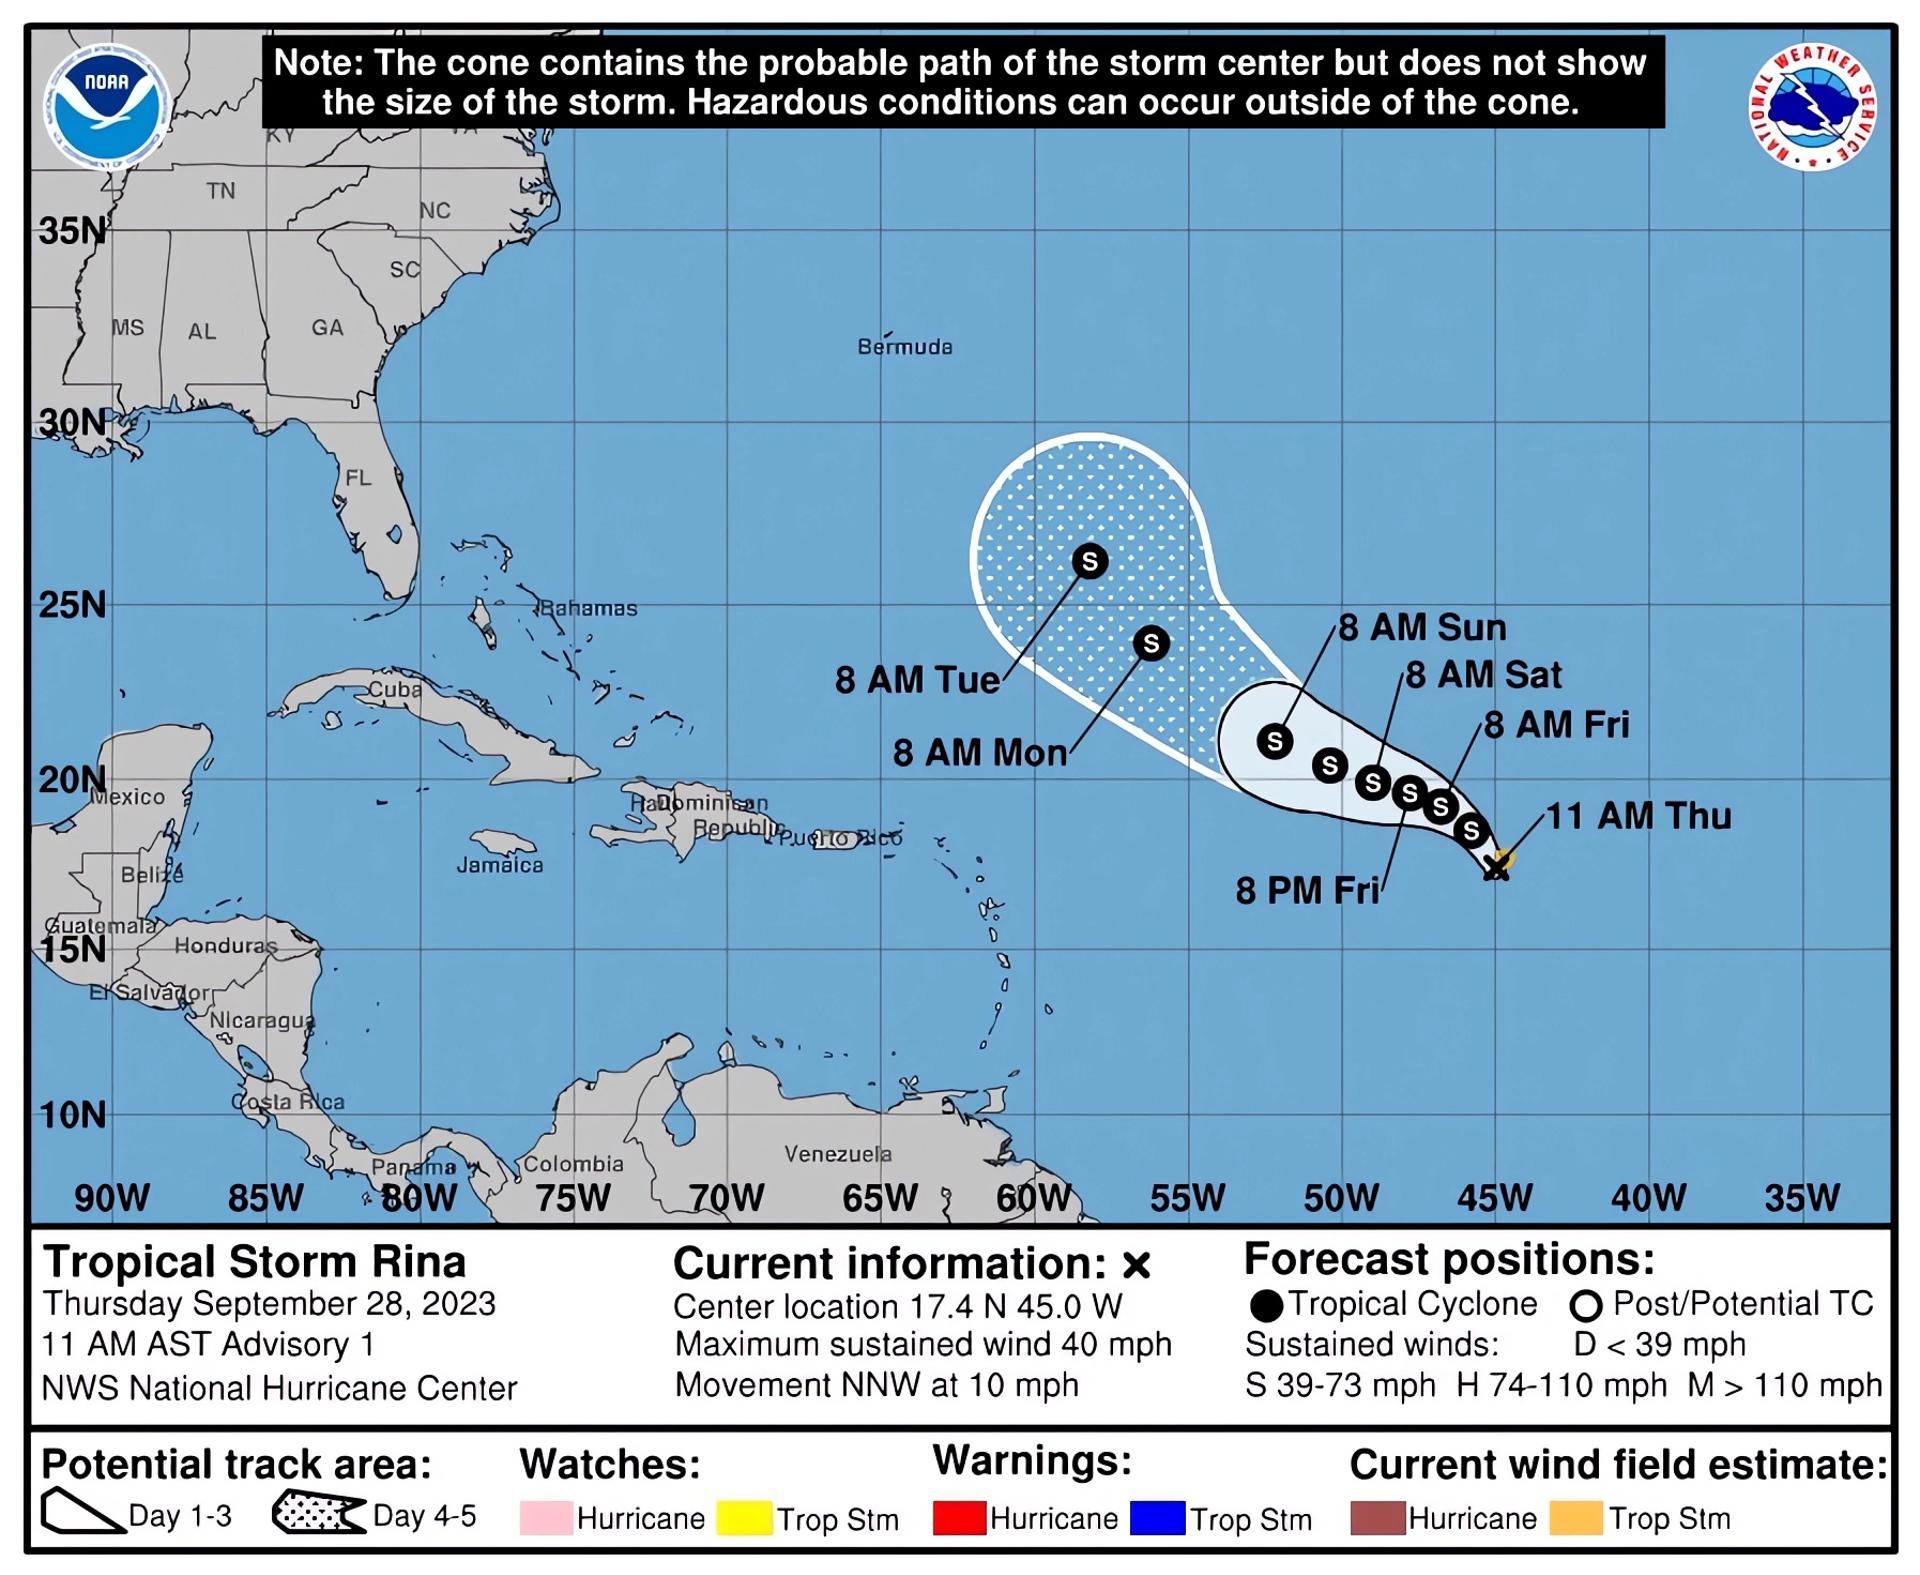 Imagen de archivo cedida por el Centro Nacional de Huracanes (NHC) de Estados Unidos donde se muestra el pronóstico de cinco días de una tormenta en el Atlántico. EFE/ NHC / SOLO USO EDITORIAL/ SOLO DISPONIBLE PARA ILUSTRAR LA NOTICIA QUE ACOMPAÑA (CRÉDITO OBLIGATORIO)